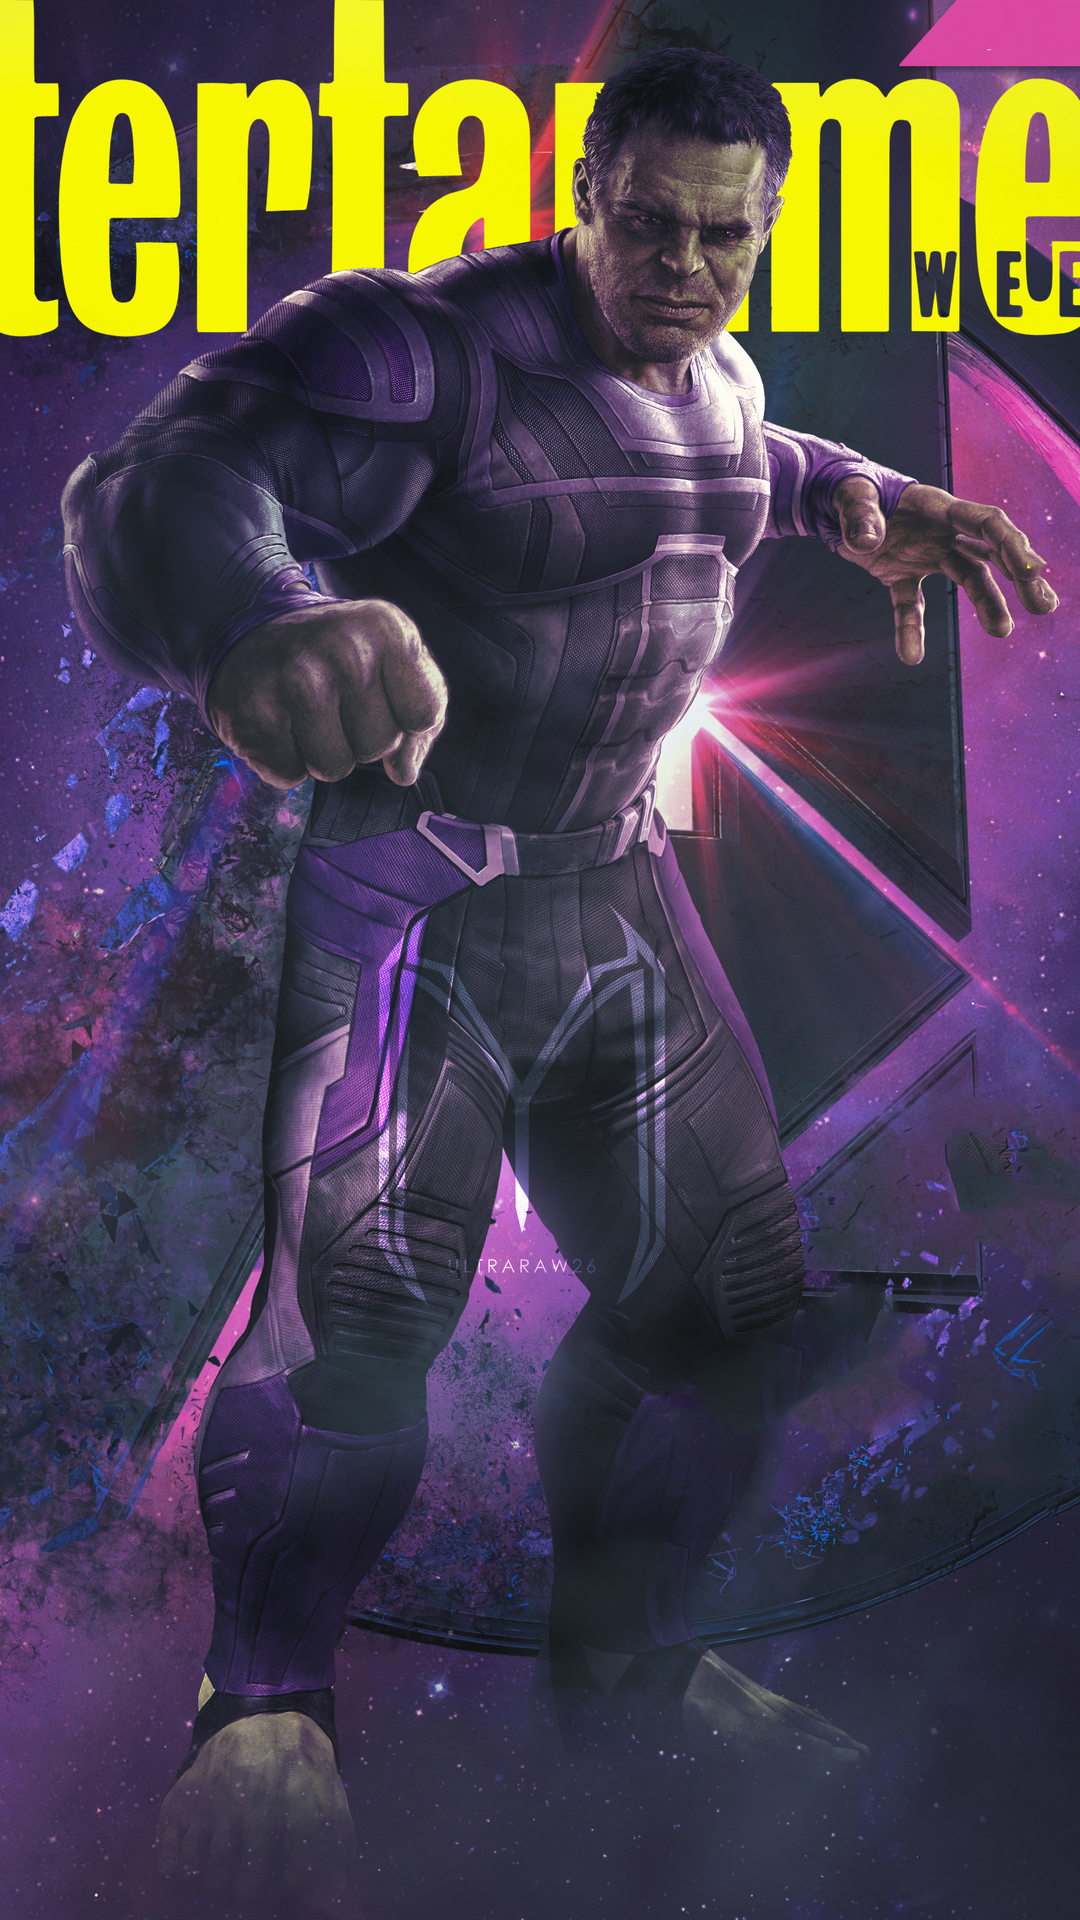 Avengers Endgame Hulk Poster Art Wallpapers